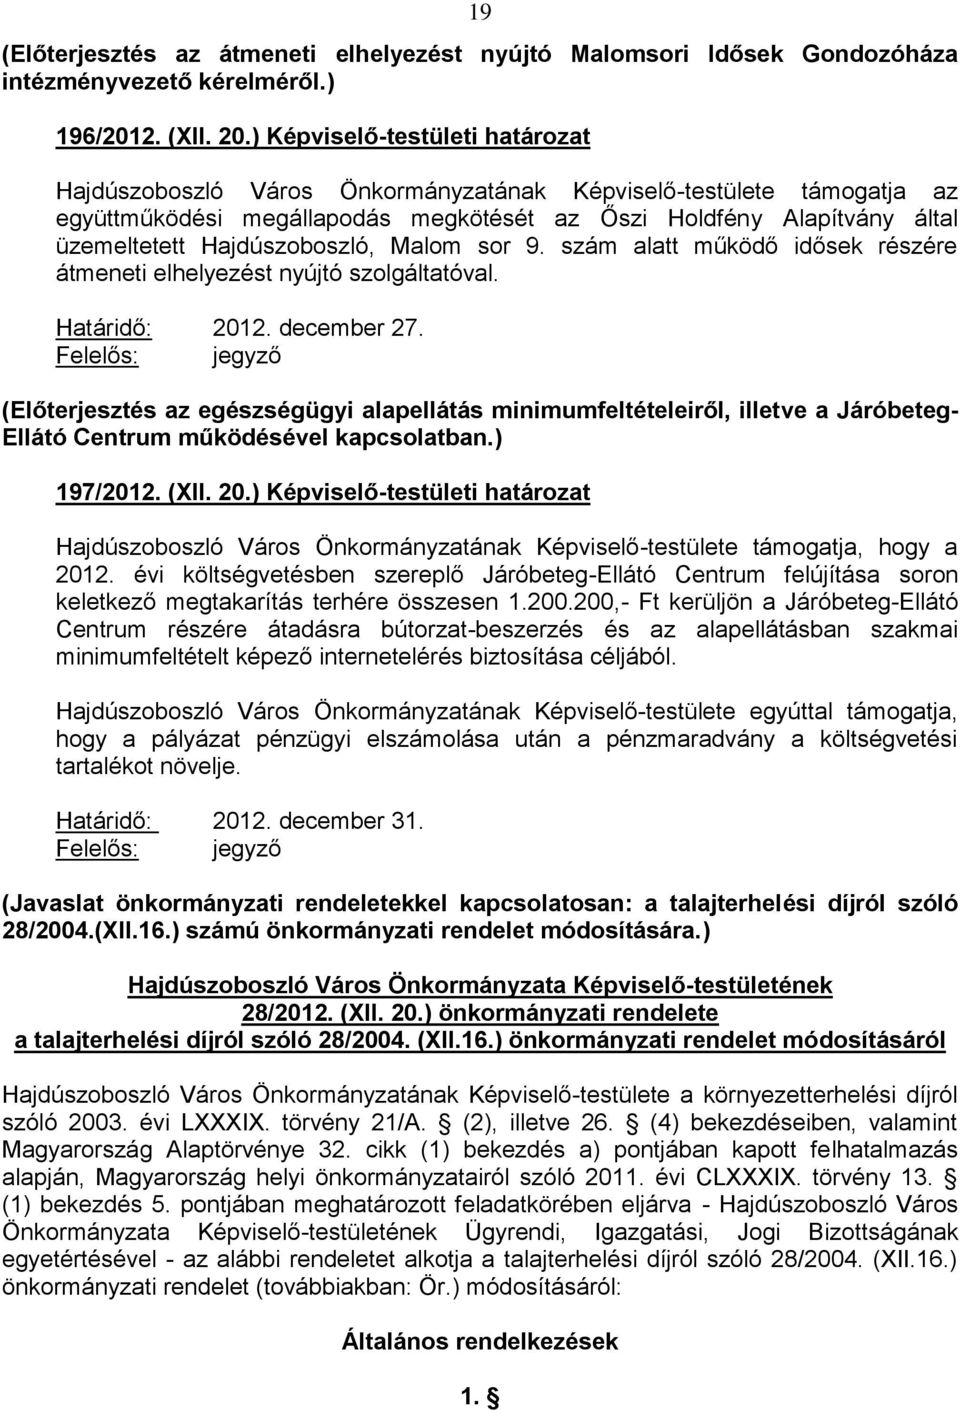 Hajdúszoboszló, Malom sor 9. szám alatt működő idősek részére átmeneti elhelyezést nyújtó szolgáltatóval. Határidő: 2012. december 27.